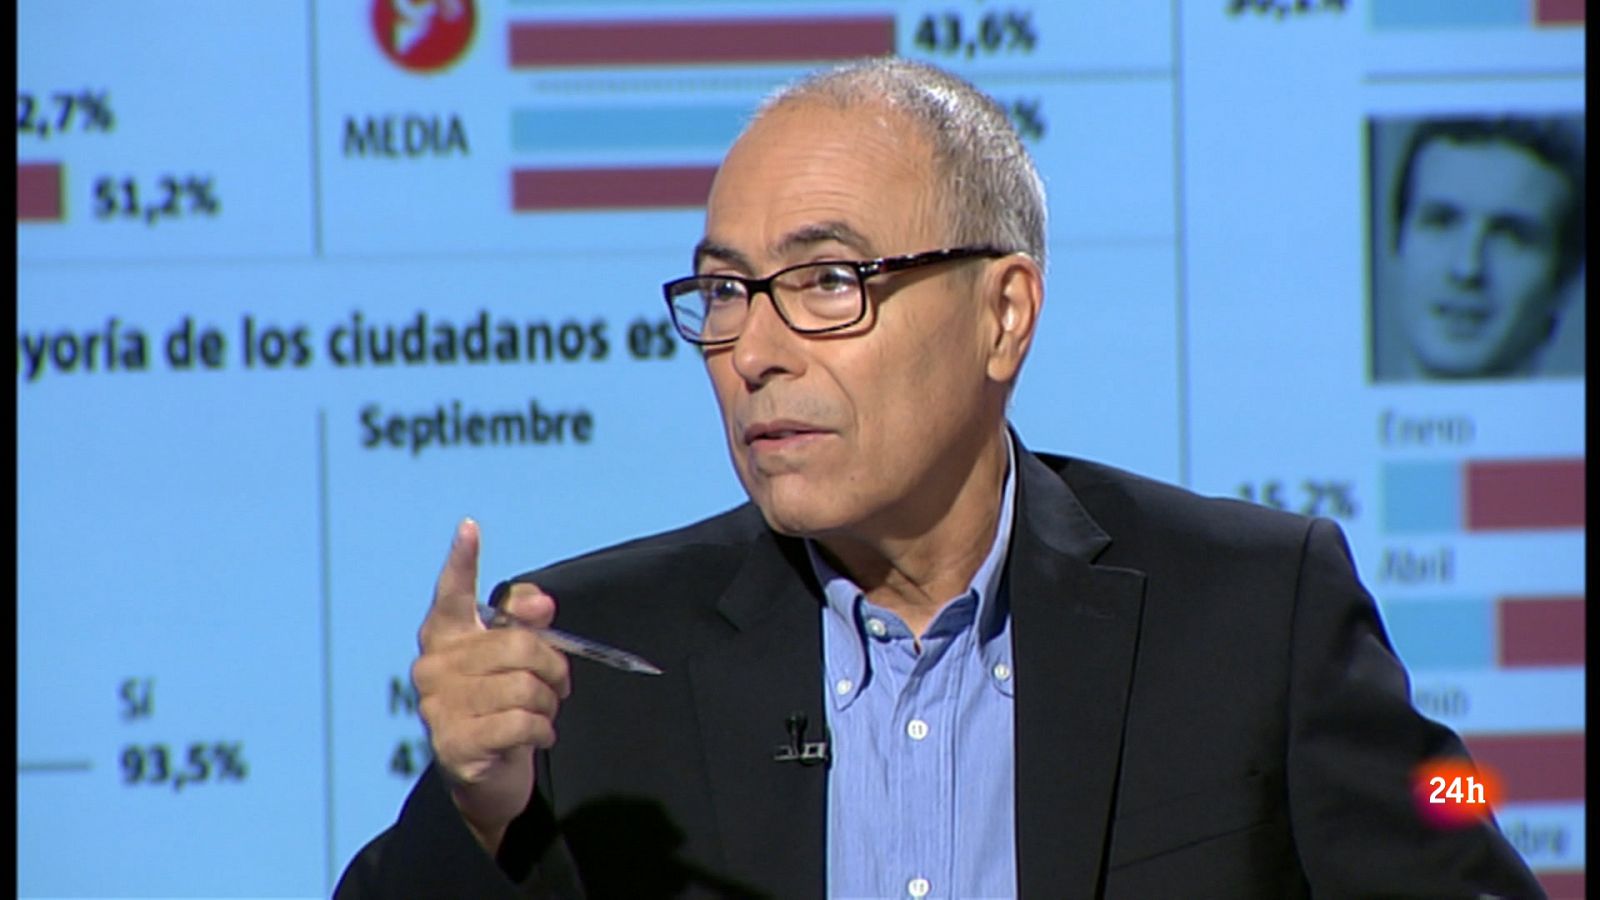 Aquí Parlem - Carles Castro, expert en anàlisi electoral - RTVE.es